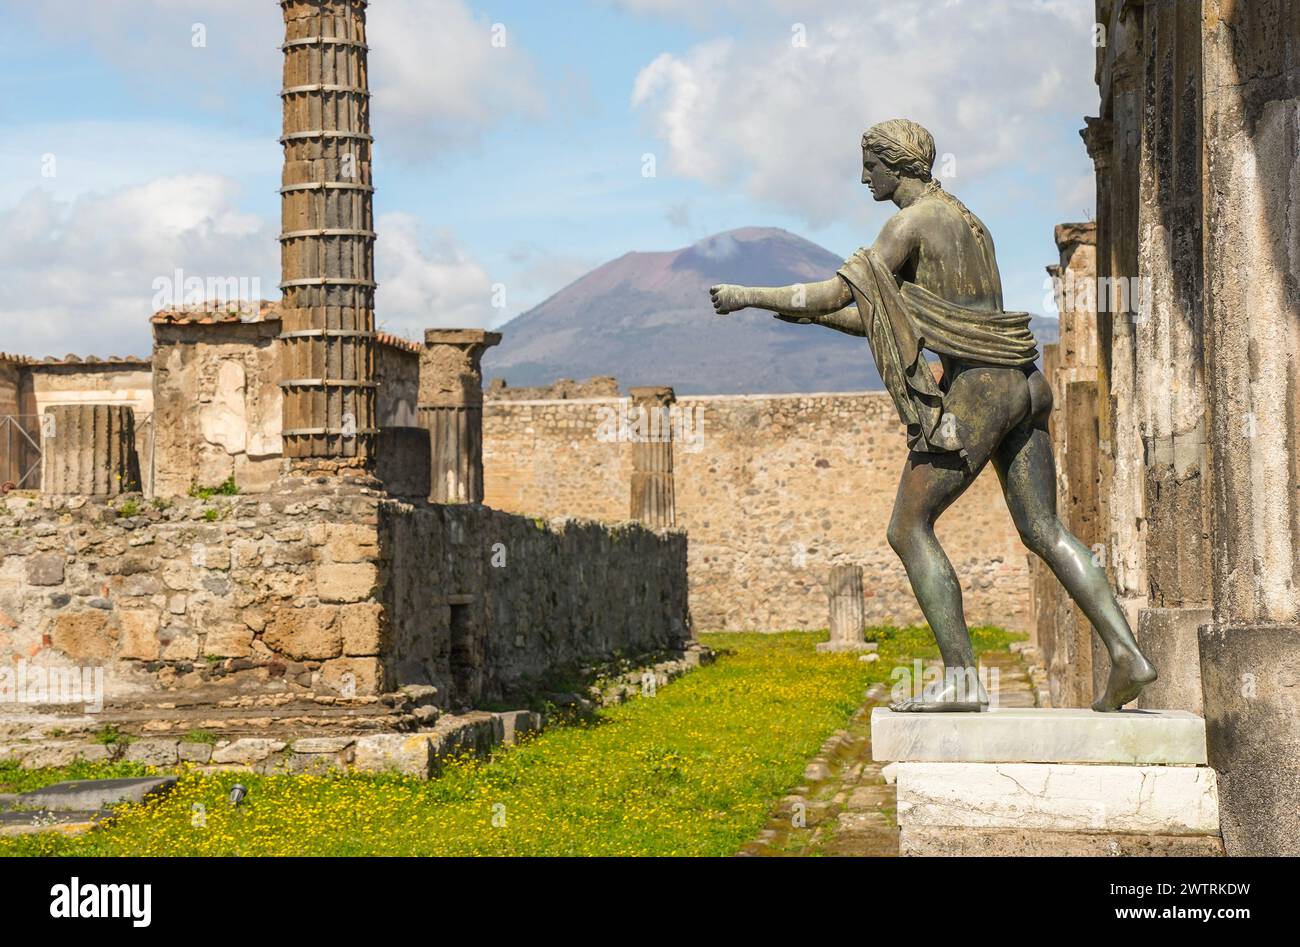 Apollo-Tempel in der antiken römischen Stadt Pompeji, mit dem Vesuv-Vulkan im Hintergrund, Neapel, Italien Stockfoto